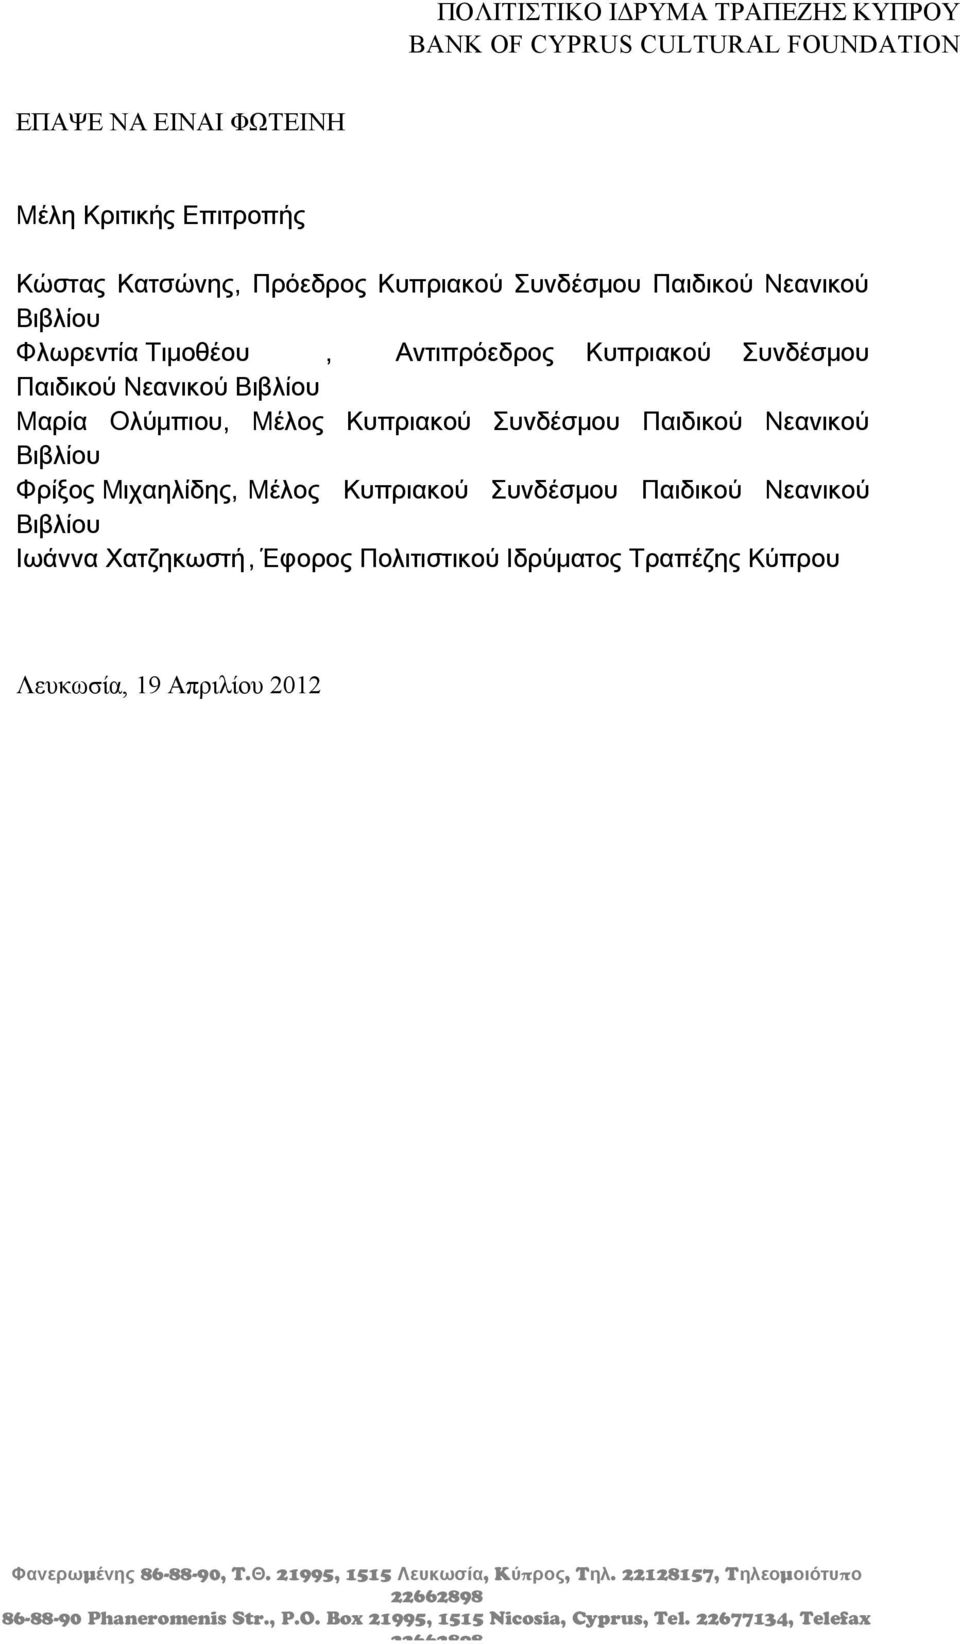 Παιδικού Νεανικού Βιβλίου Ιωάννα Χατζηκωστή, Έφορος Πολιτιστικού Ιδρύματος Τραπέζης Κύπρου Λευκωσία, 19 Απριλίου 2012 μ 86-88-90, T.. 21995, 1515, K π, T.